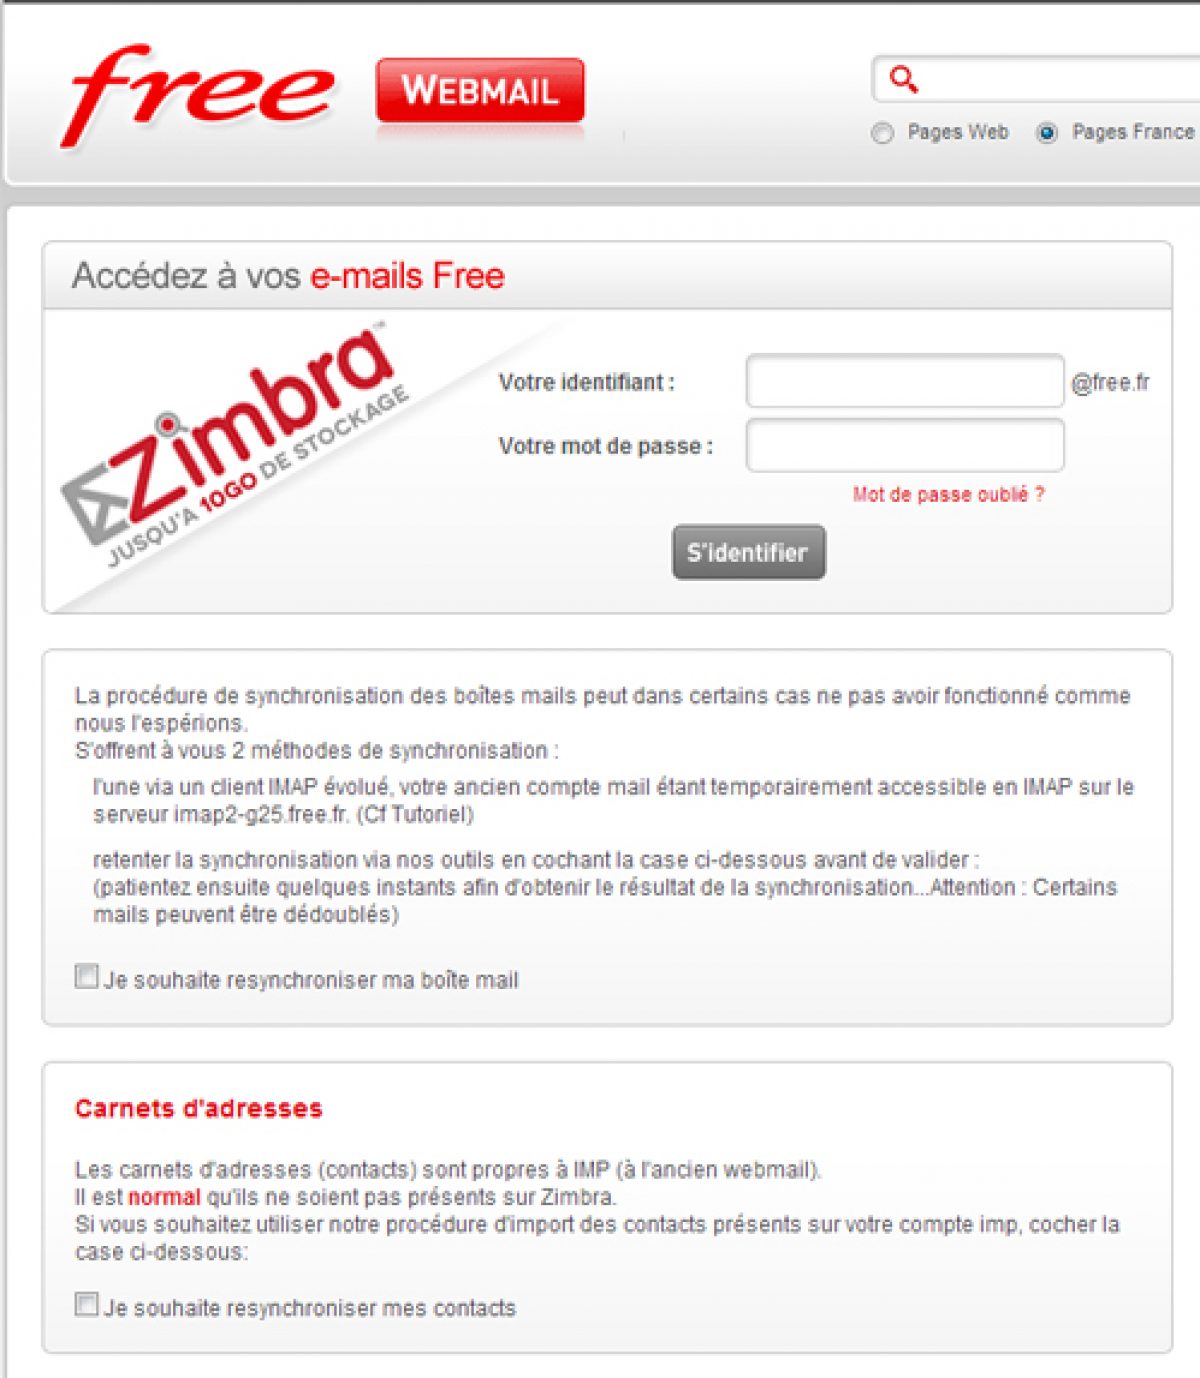 Mails ou dossiers perdus sous Zimbra : une petite verification s’impose